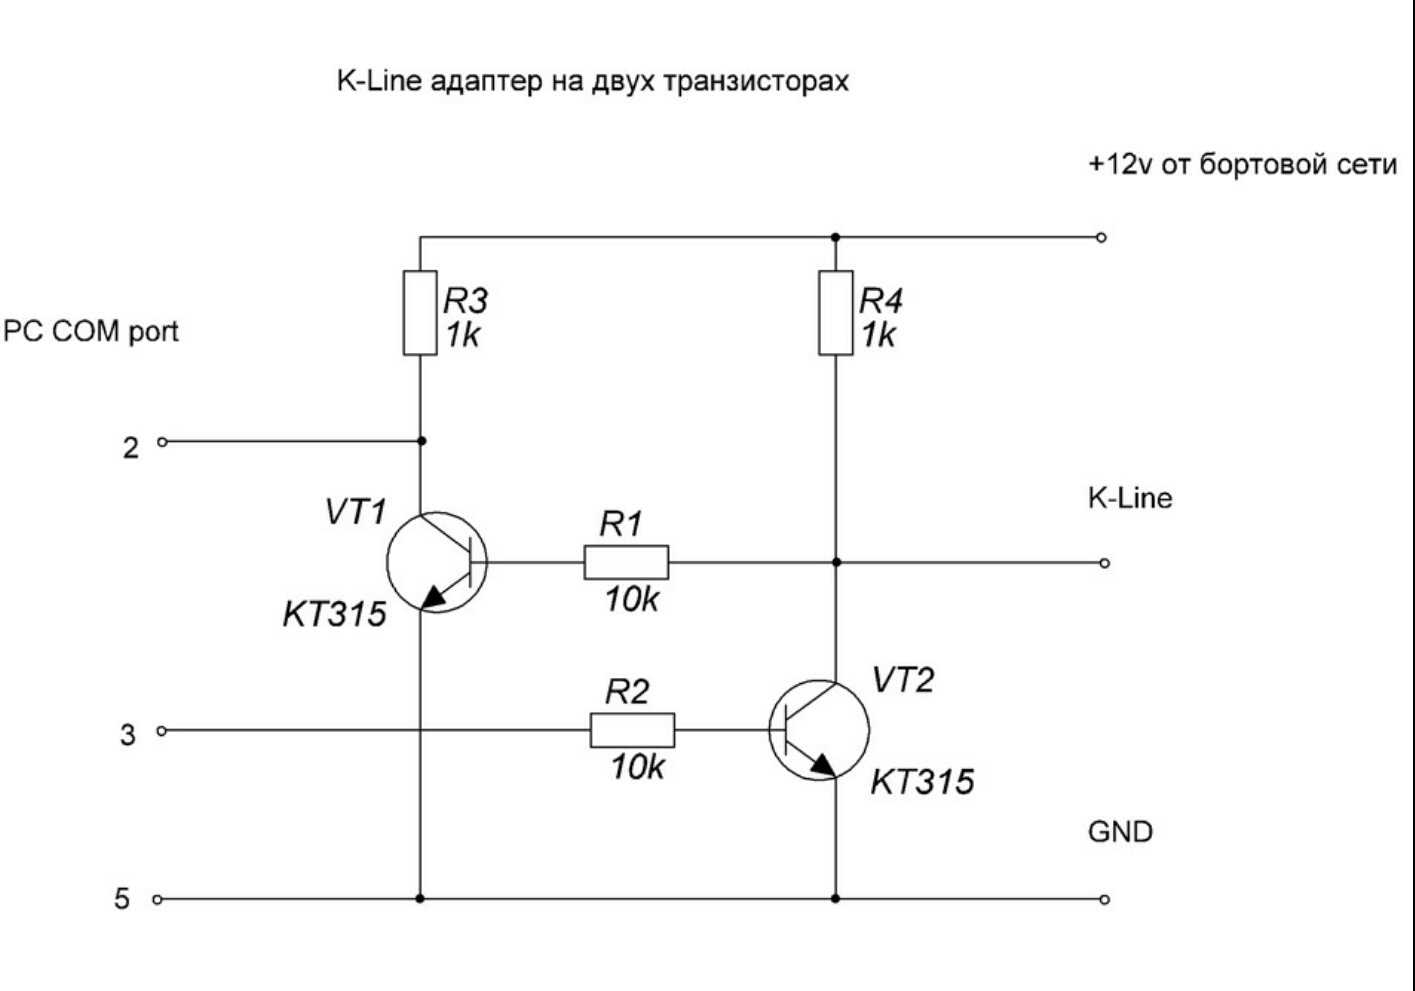 Схема k. Самодельный k-line адаптер USB схема. K-line адаптер на транзисторах. Схема k-line адаптера на 2 транзисторах. USB K-line адаптер на транзисторах.